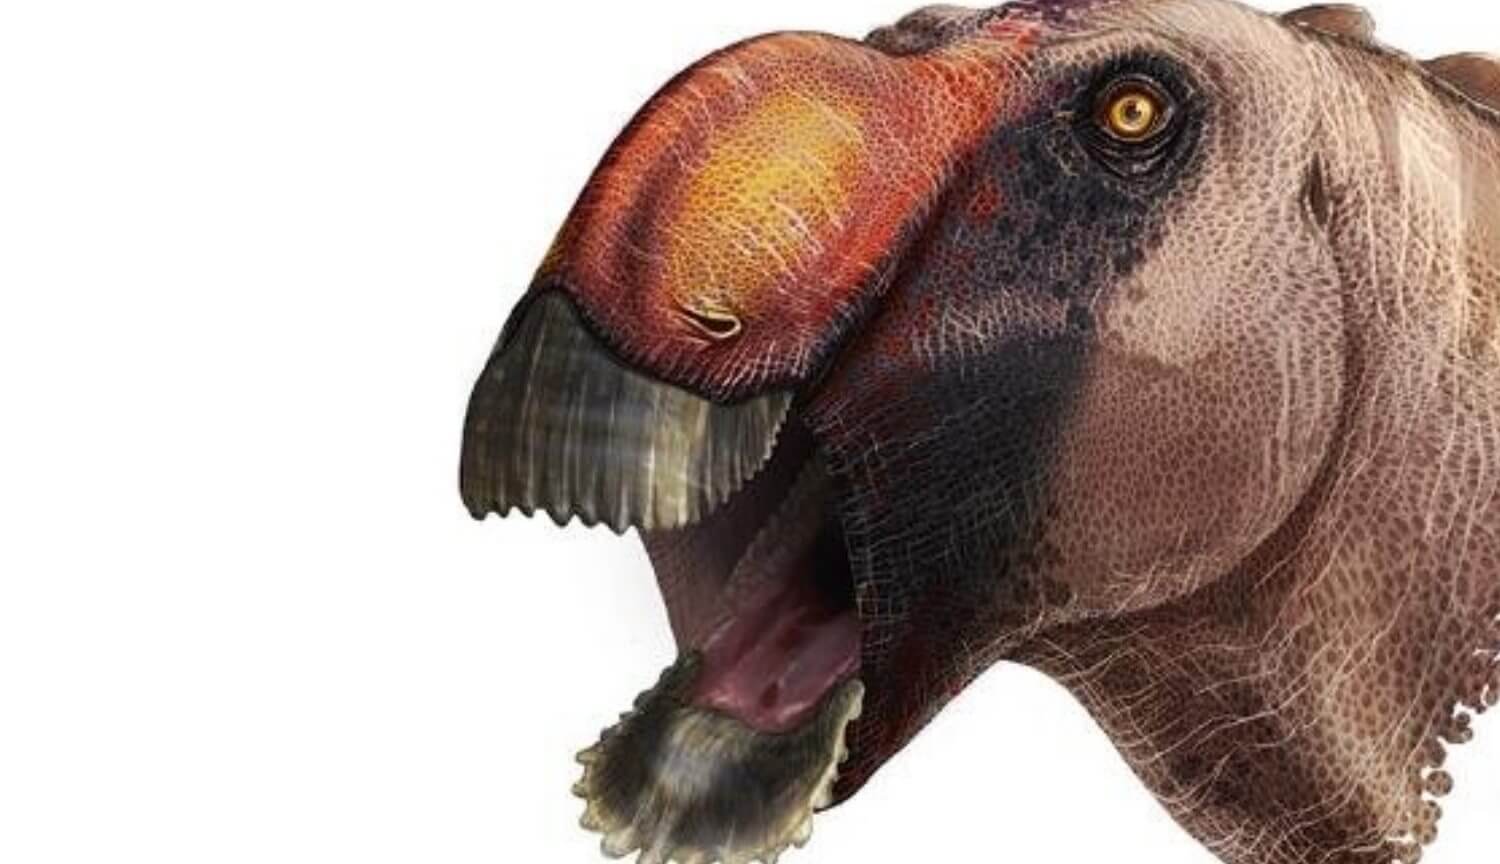 Os cientistas descobriram um novo dinossauro. Ele parecia um pato